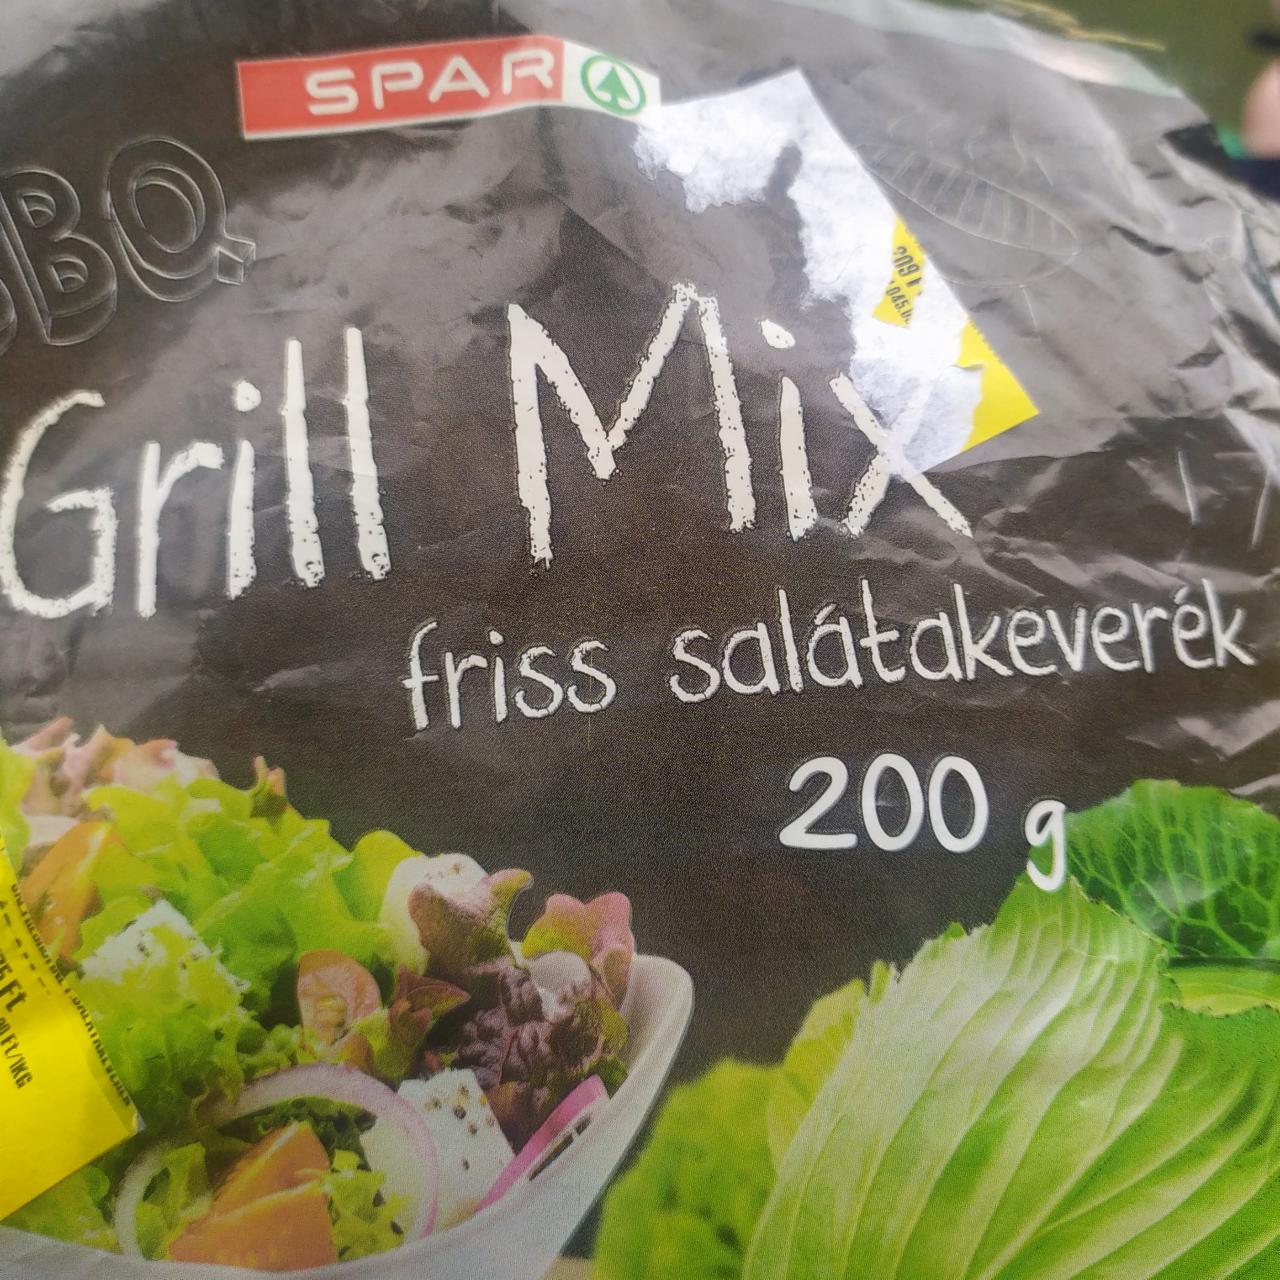 Képek - BBQ Grill Mix friss salátakeverék Spar